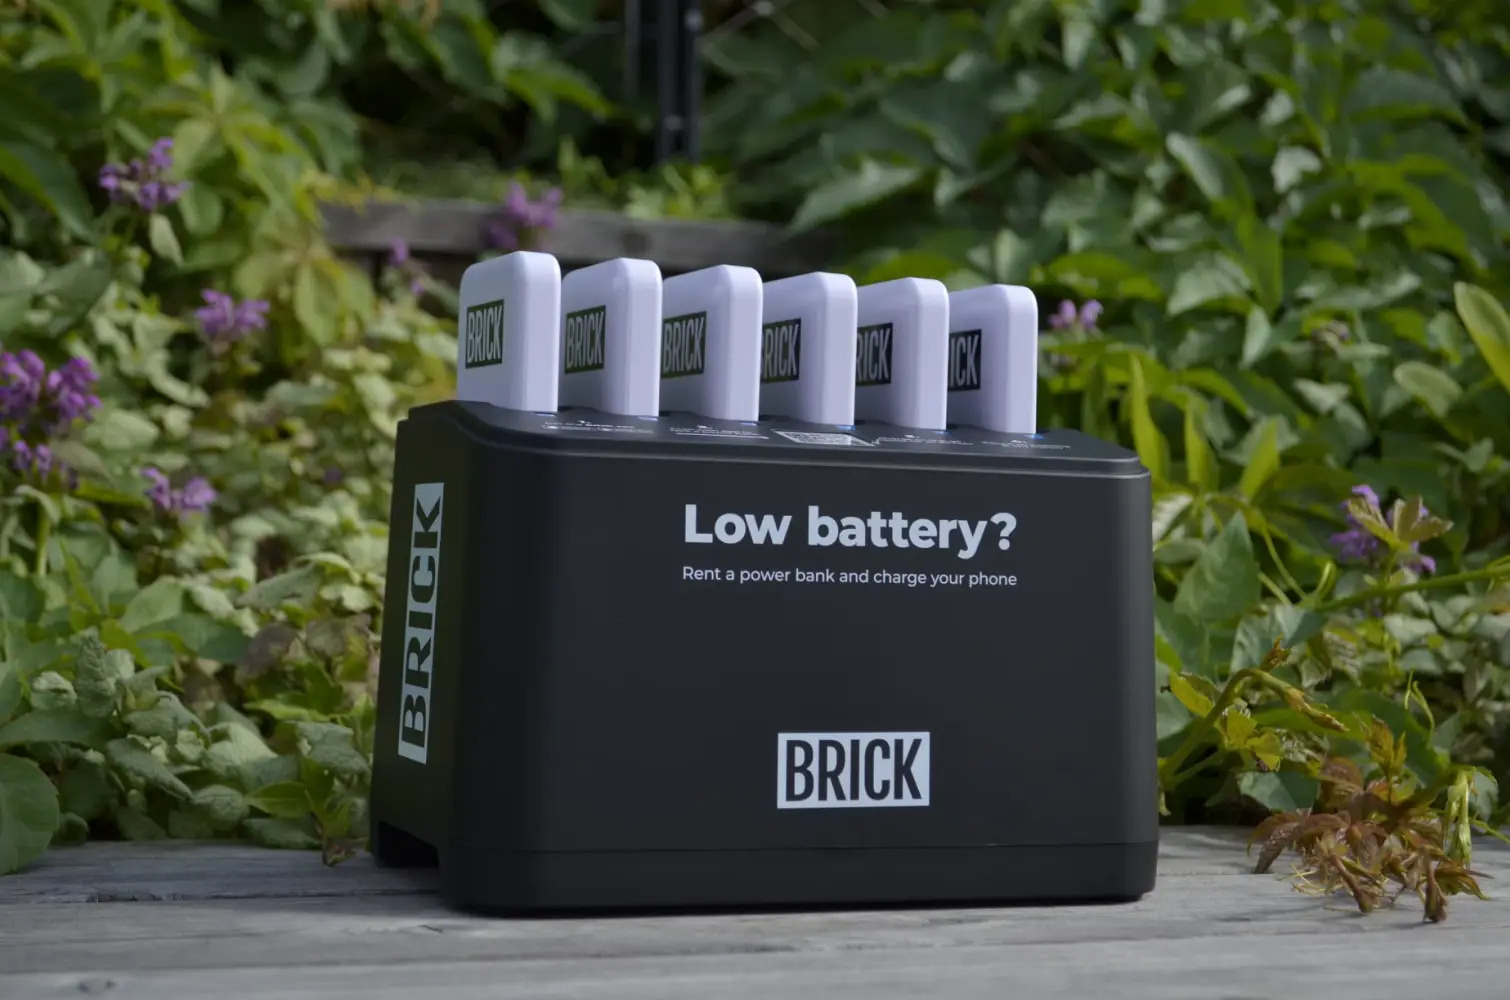 BRICK aplikacija: Da „prazna baterija“ postane prošlost